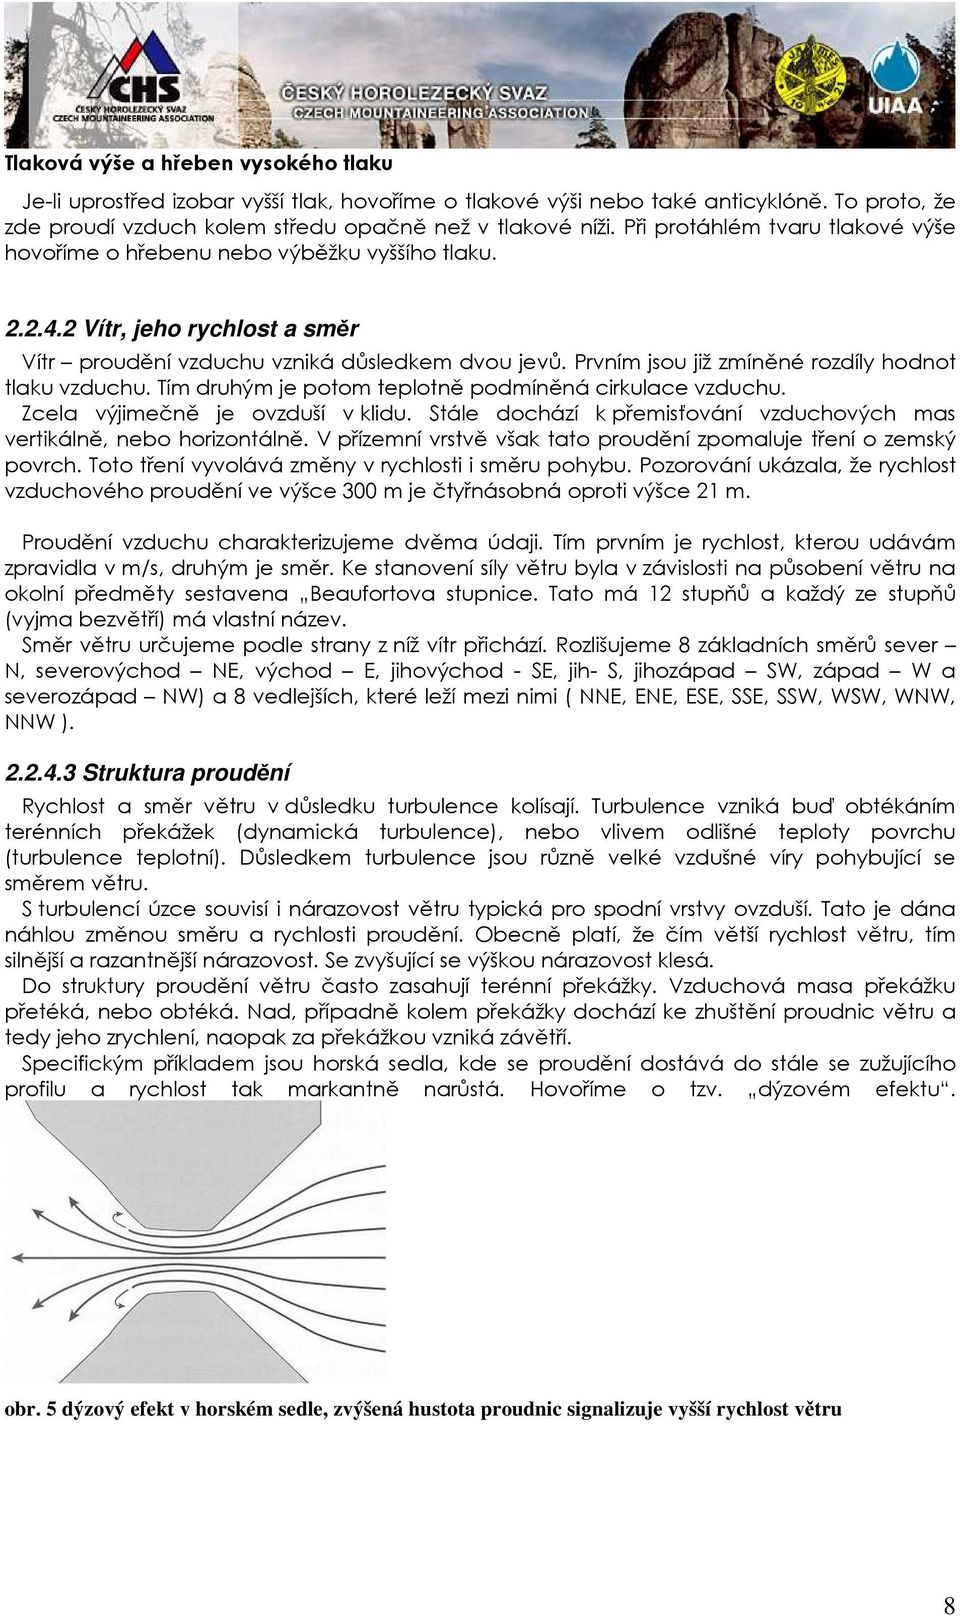 Meteorologie pro instruktory horolezectví ČHS - PDF Stažení zdarma